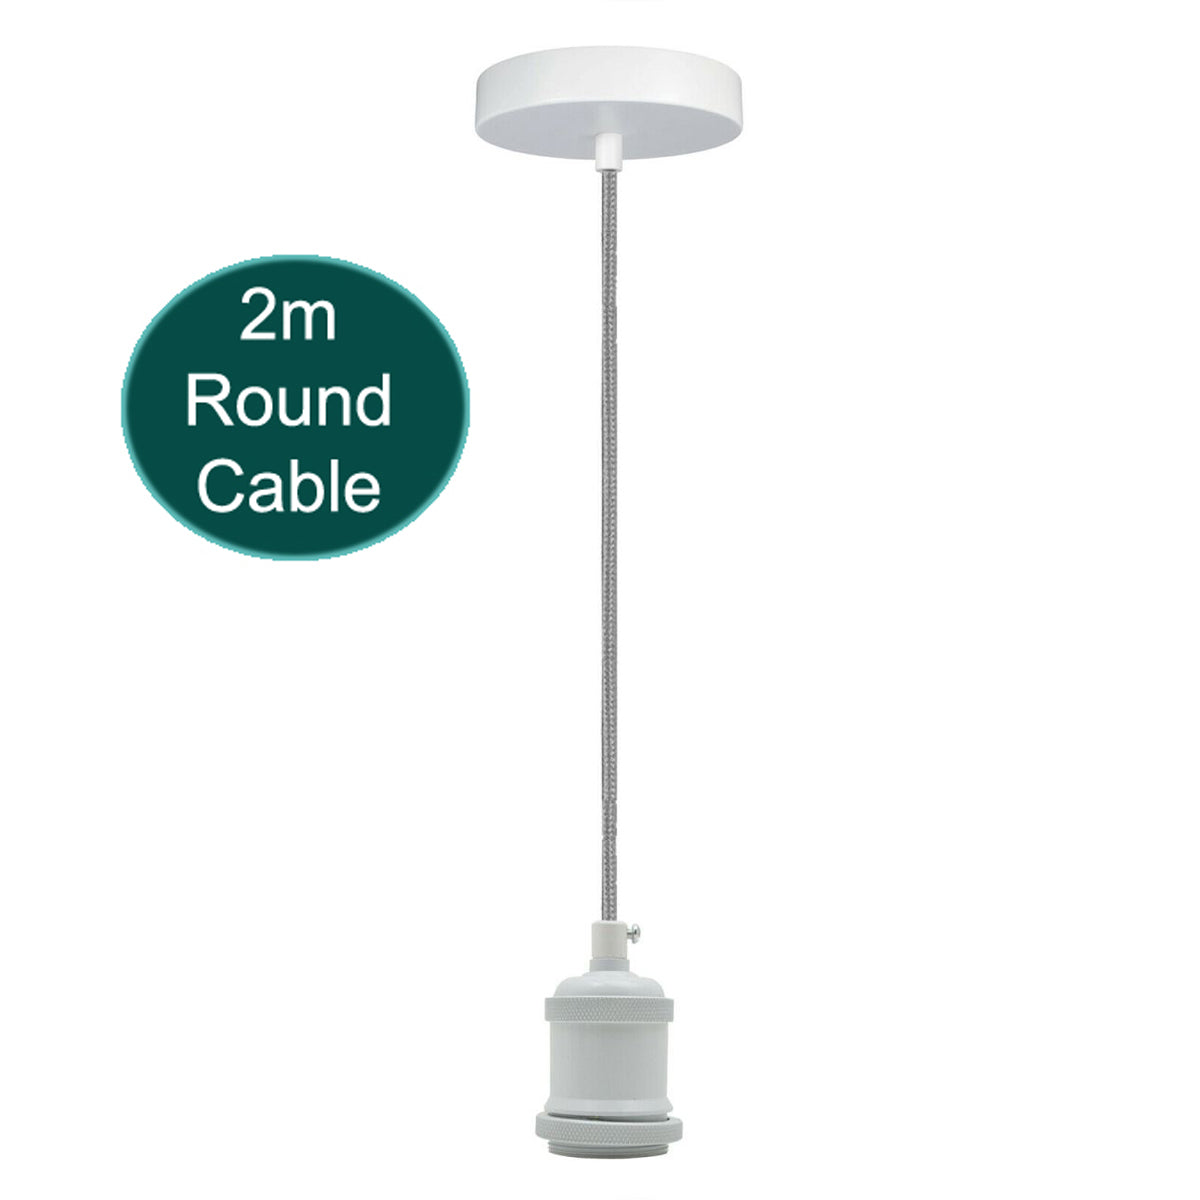 2m Grey Round Cable E27 Base White Pendant Holder~1726 - electricalsone UK Ltd